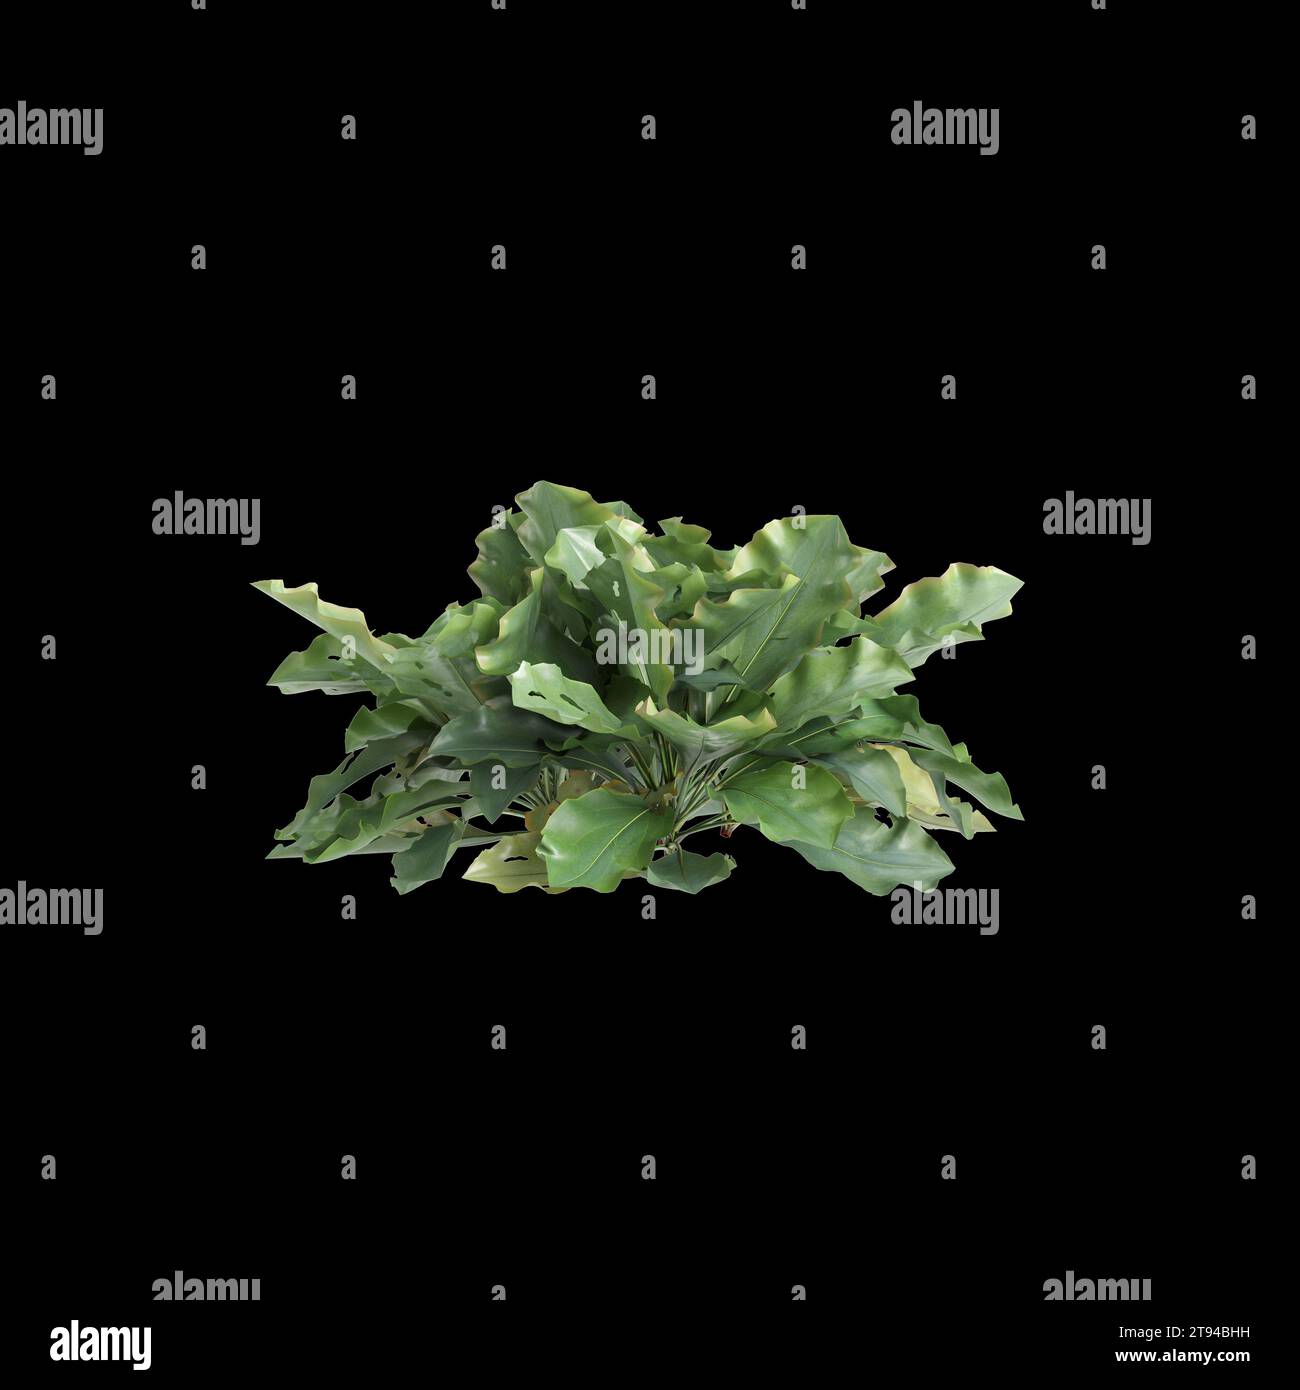 3d illustration of Limonium perezii bush isolated black background Stock Photo